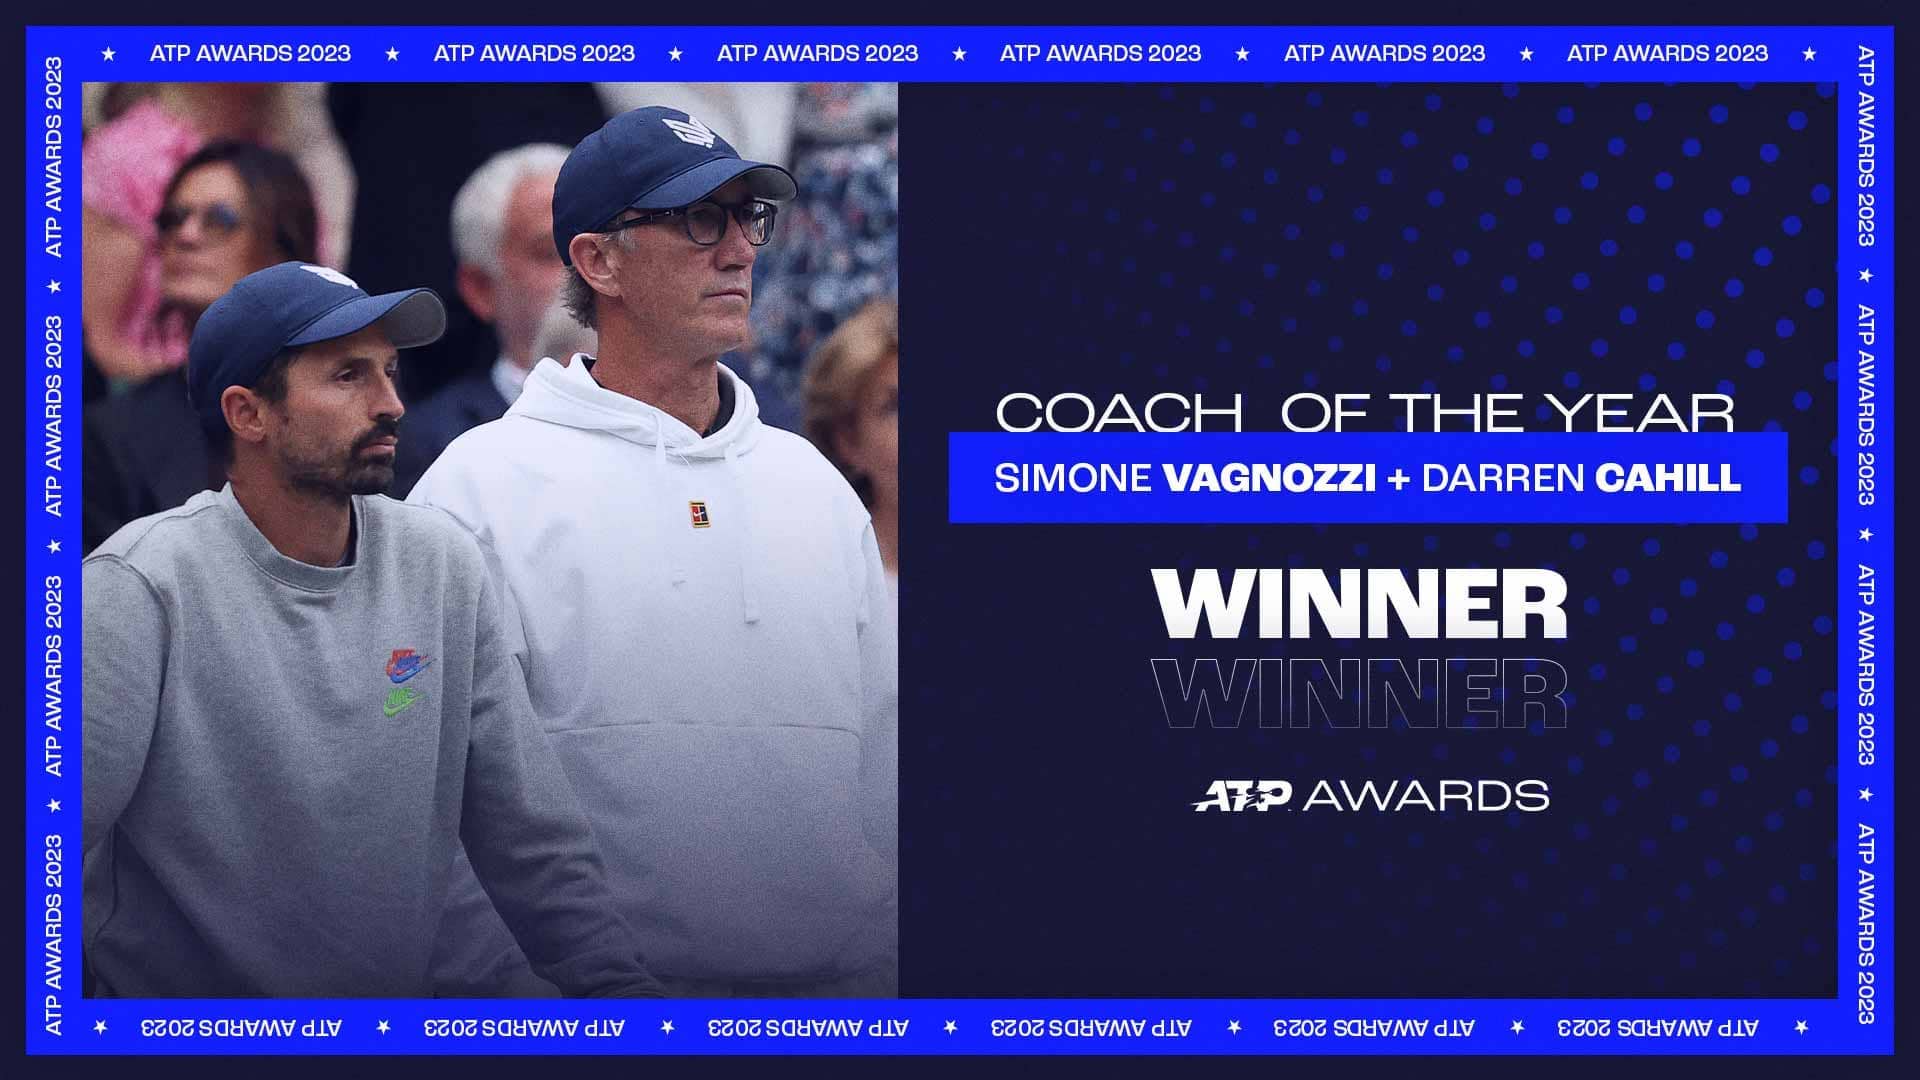 Cahill & Vagnozzi Win 2023 ATP Coach Of The Year Award